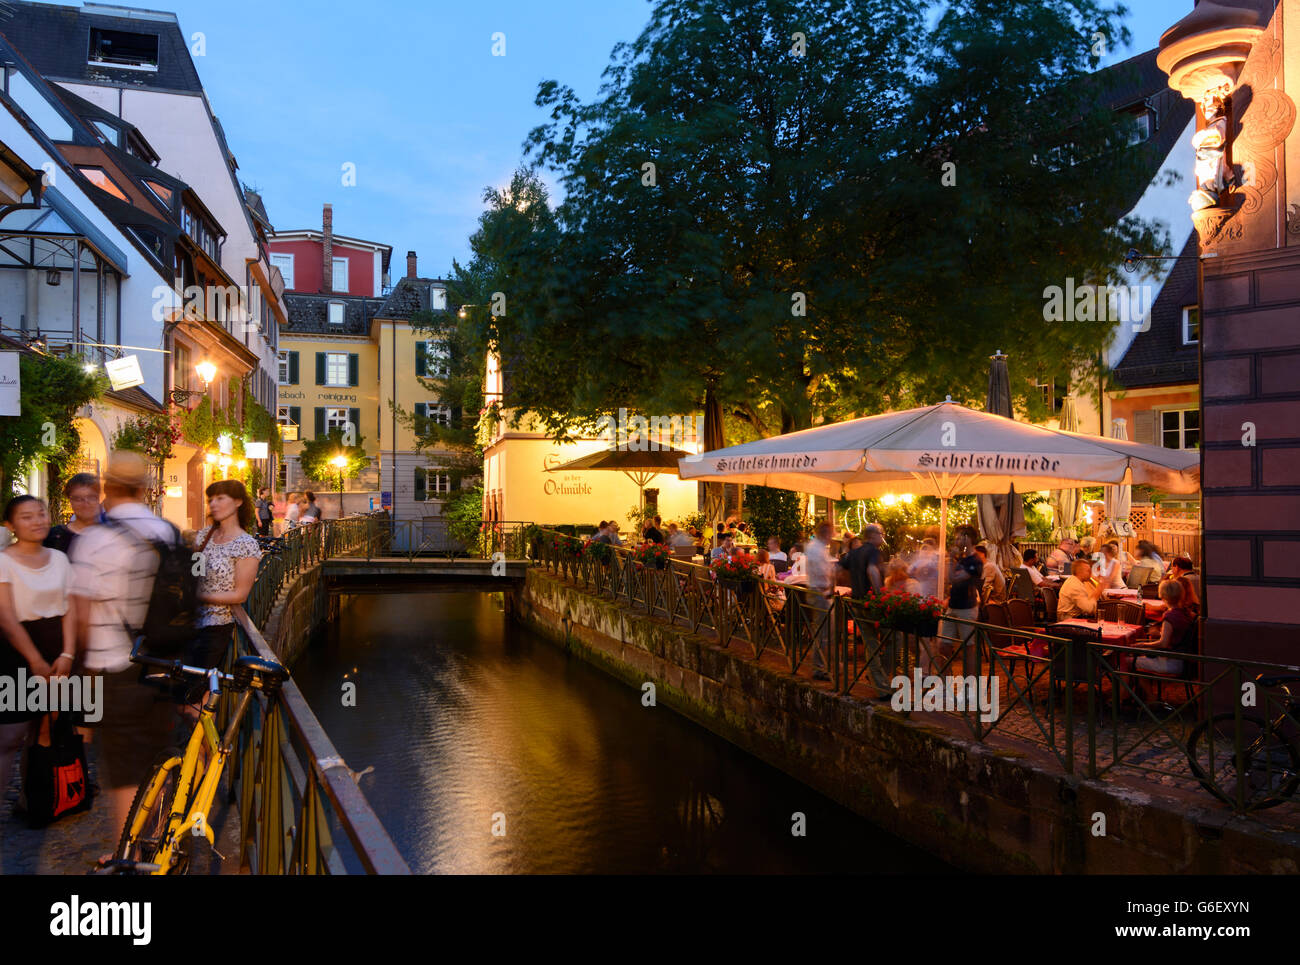 Canale commerciale sulla strada Gerberau nella città vecchia con il ristorante Sichelschmiede, Freiburg im Breisgau, Germania, Baden Foto Stock